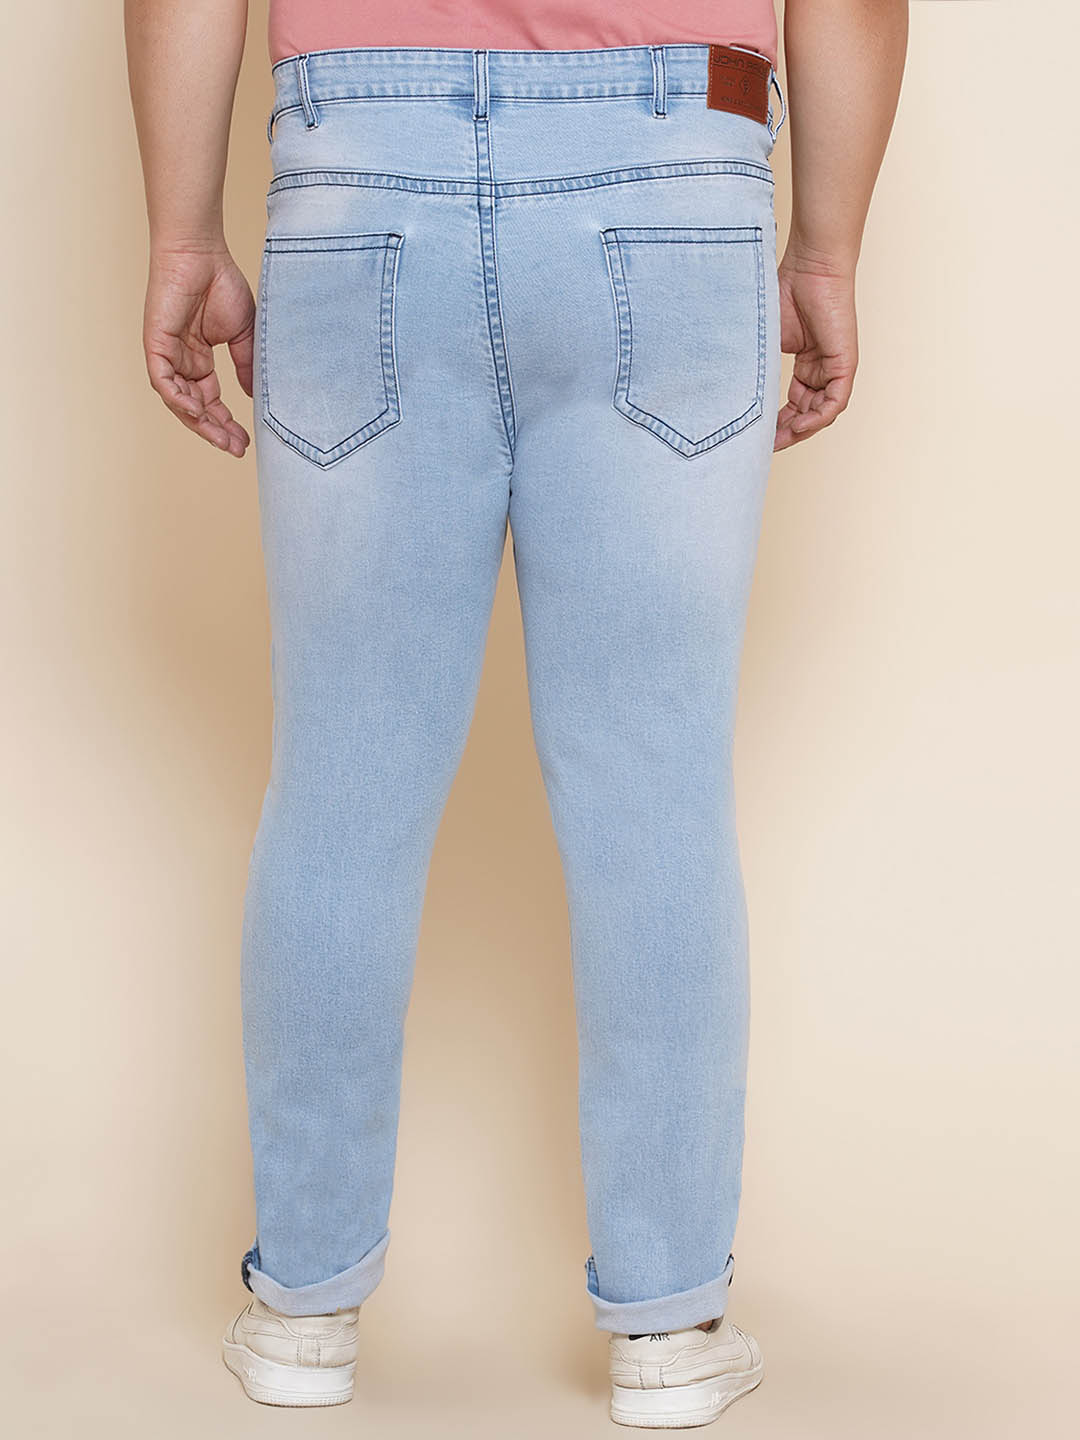 bottomwear/jeans/JPJ12208/jpj12208-5.jpg